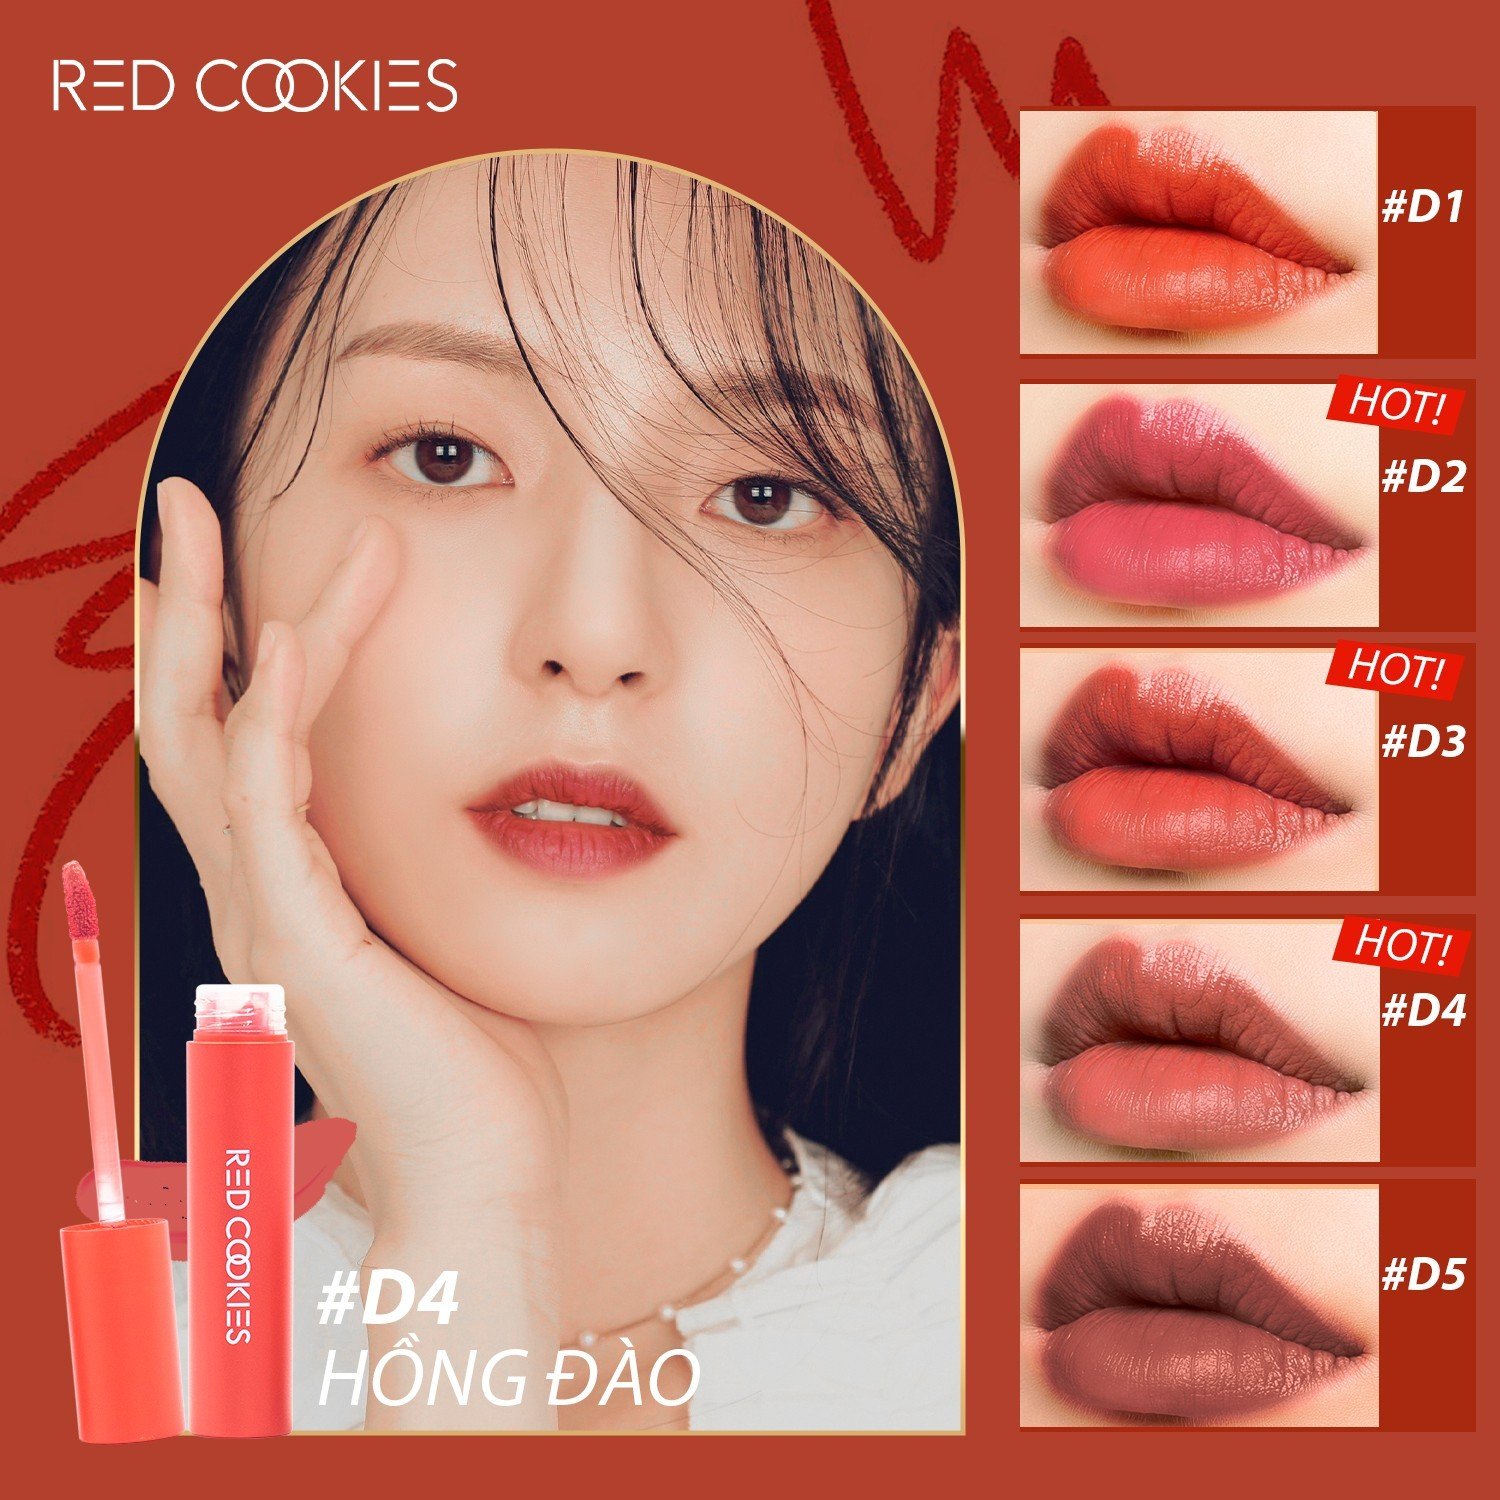 Son Lì Red Cookies Water Dew Velvet Tint Hàn Quốc Màu D4 - Hồng Đào